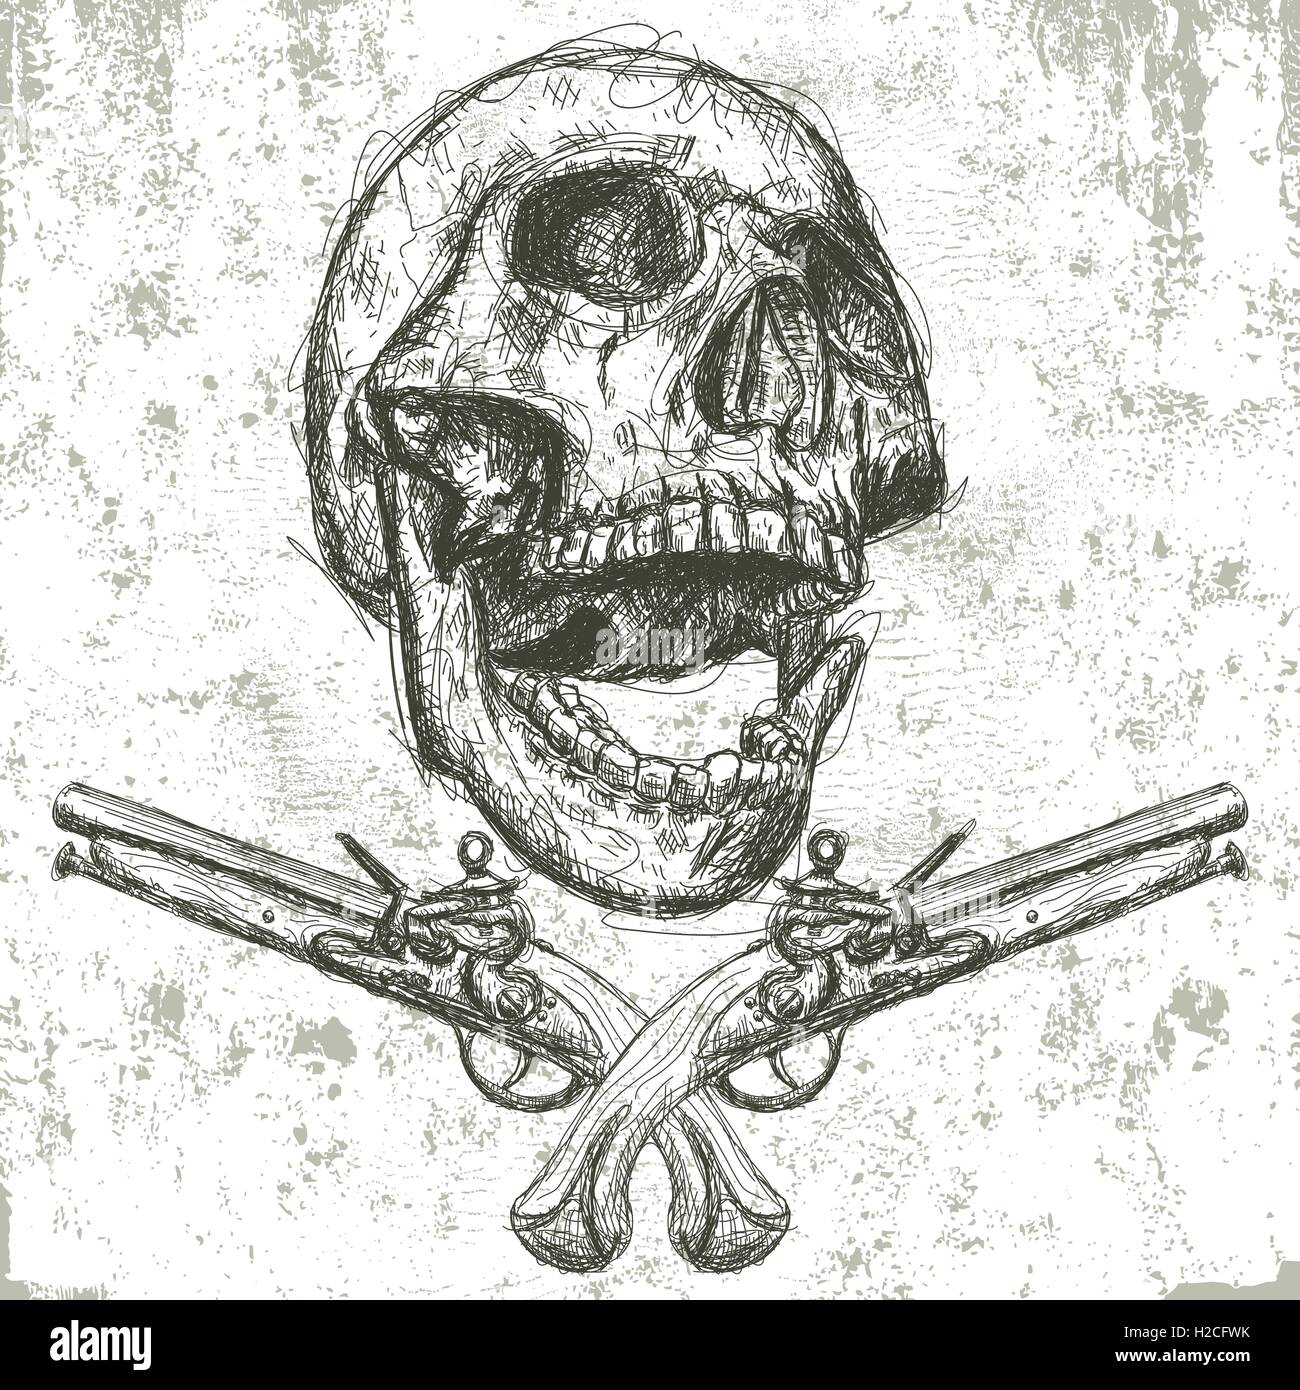 Crâne et pistolets Sketchy, dessinés à la main, crâne humain avec des pistolets en dessous sur un fond abstrait. Illustration de Vecteur